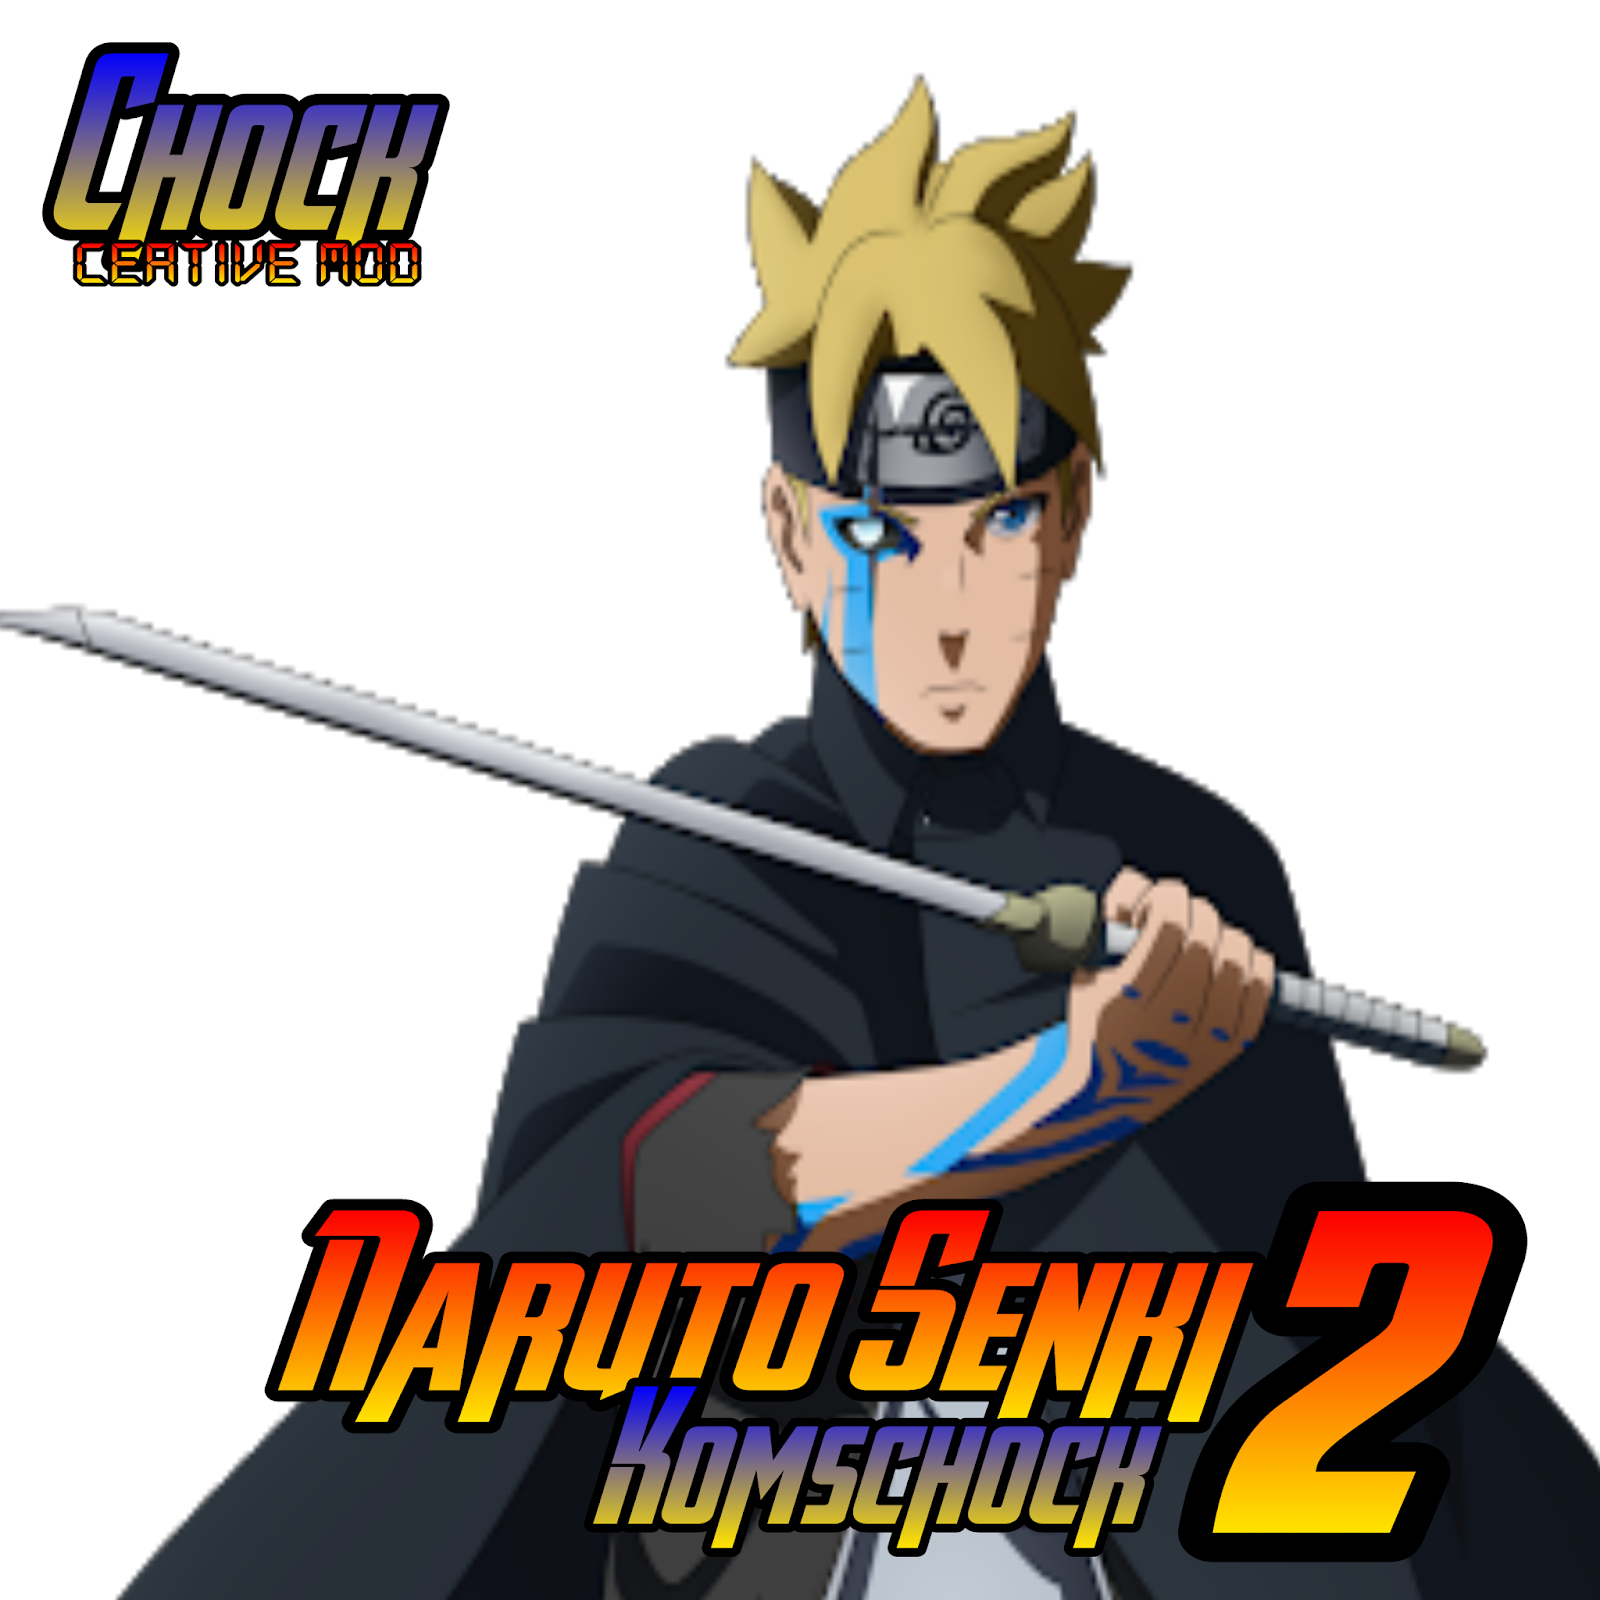 Naruto Senki Komschock 2